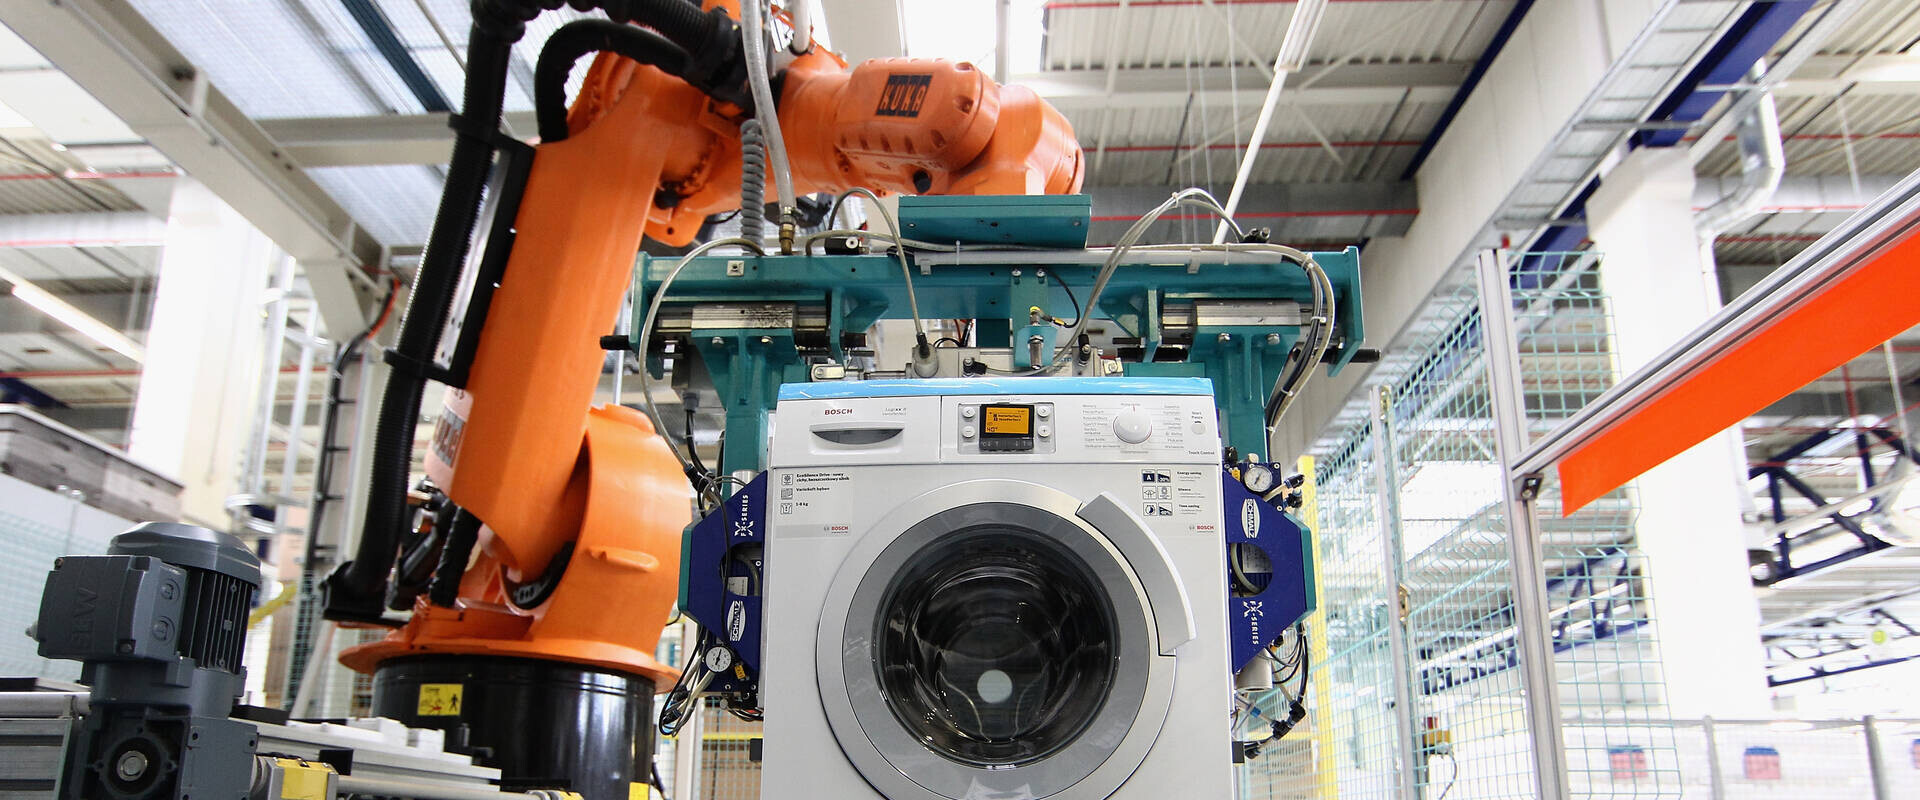 רובוט מרכיב מכונת כביסה במפעל BSH בגרמניה (צילום: Andreas Rentz, Getty Images)